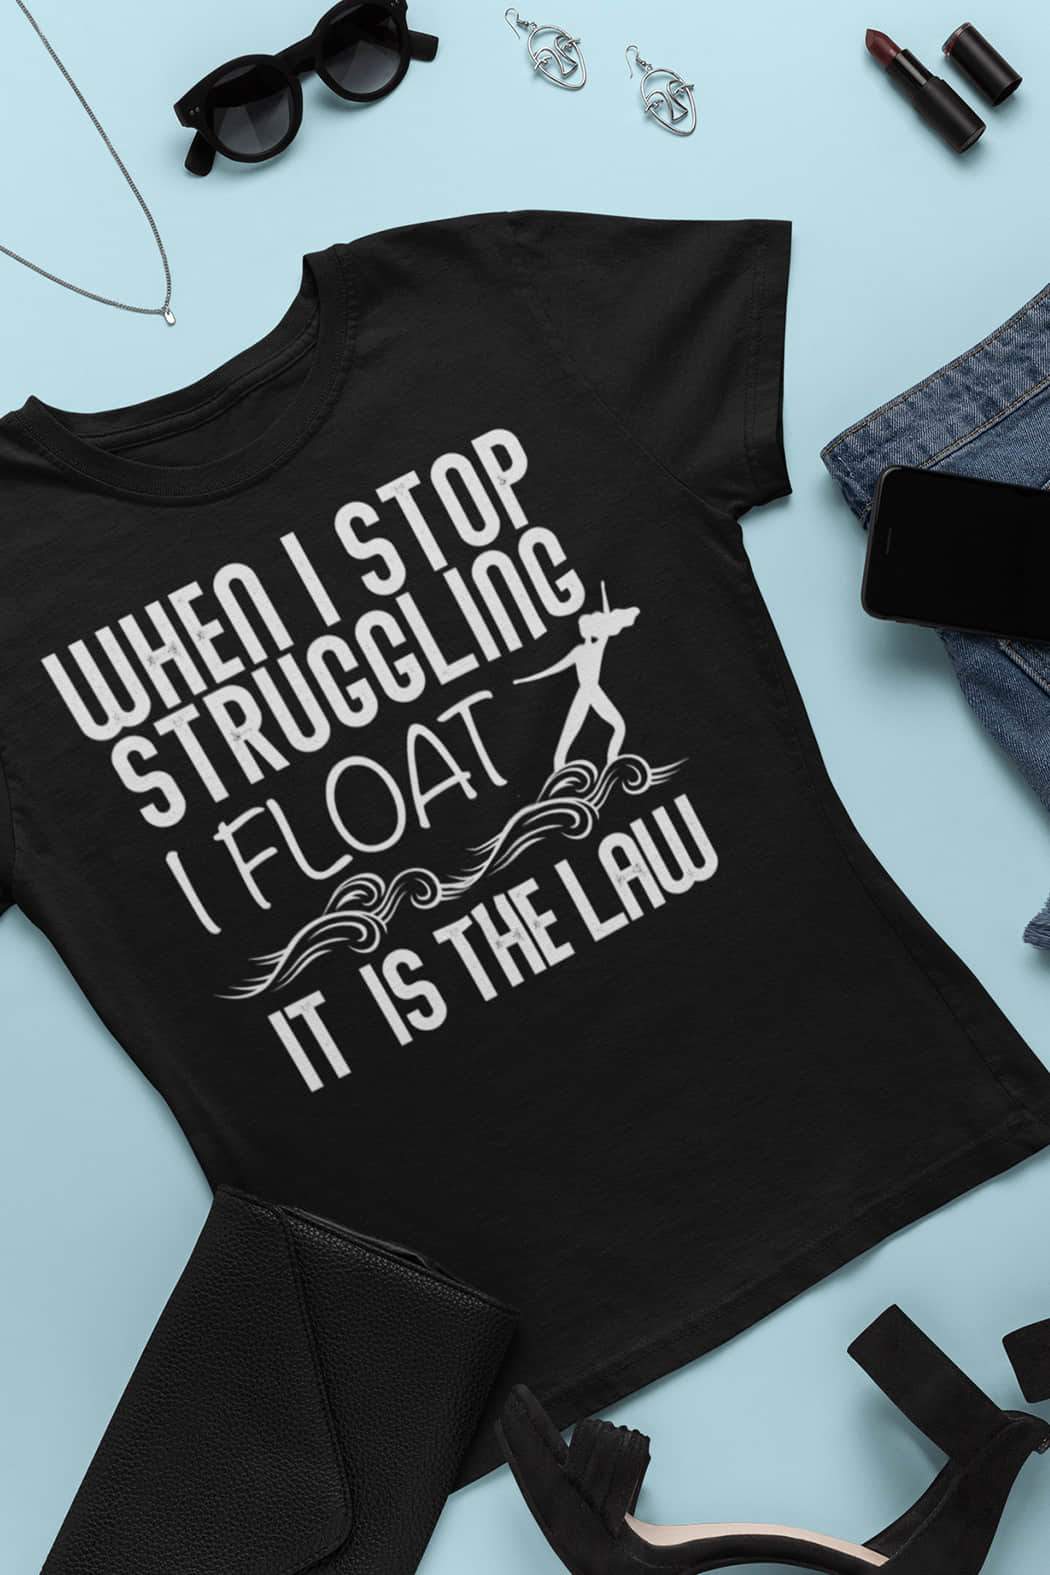 "I Float" T-Shirt